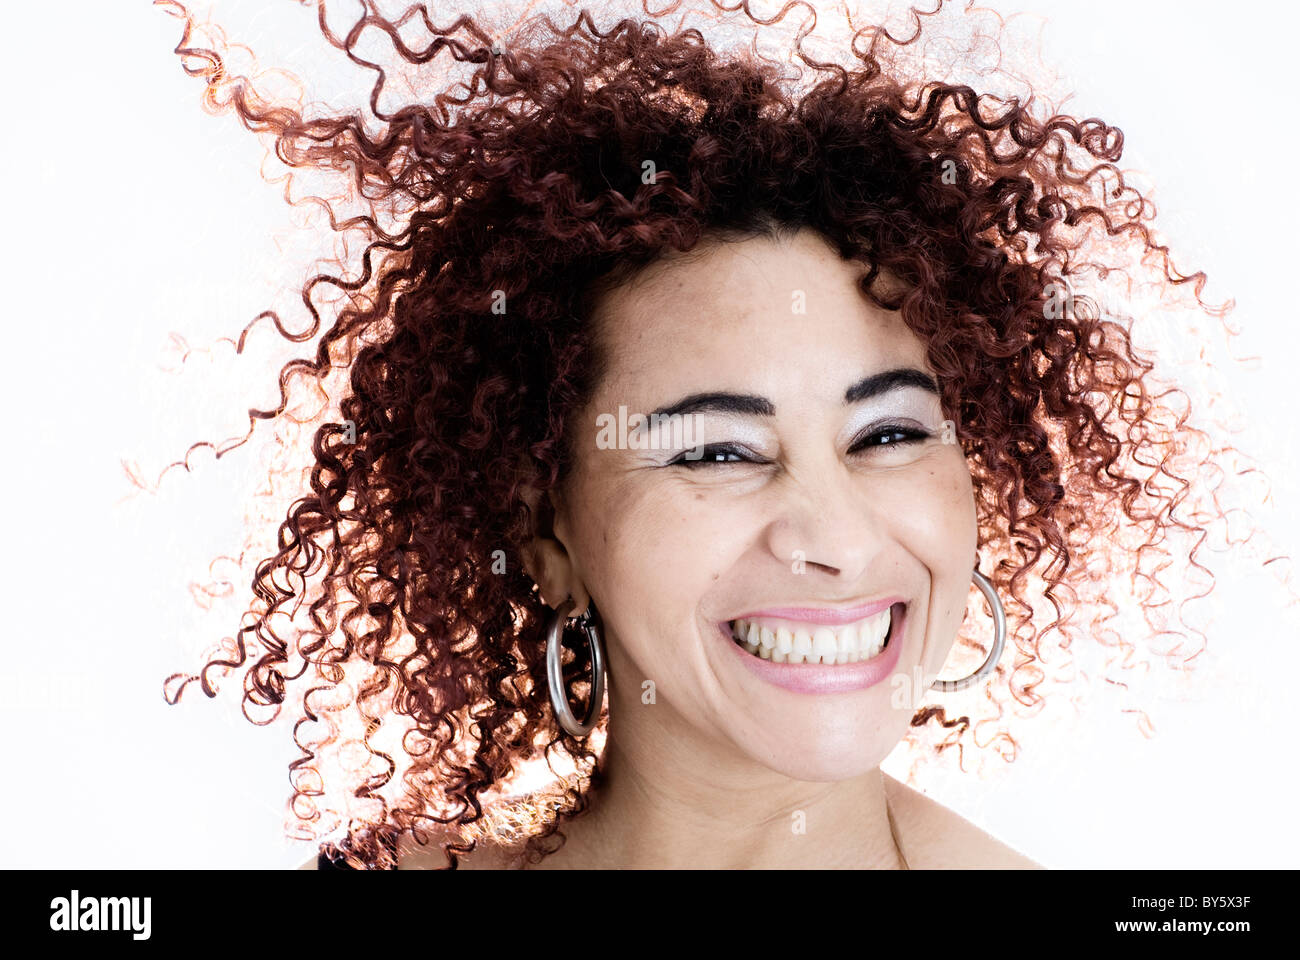 Brazilian woman smiling , a les cheveux bouclés et portait un débardeur noir Banque D'Images